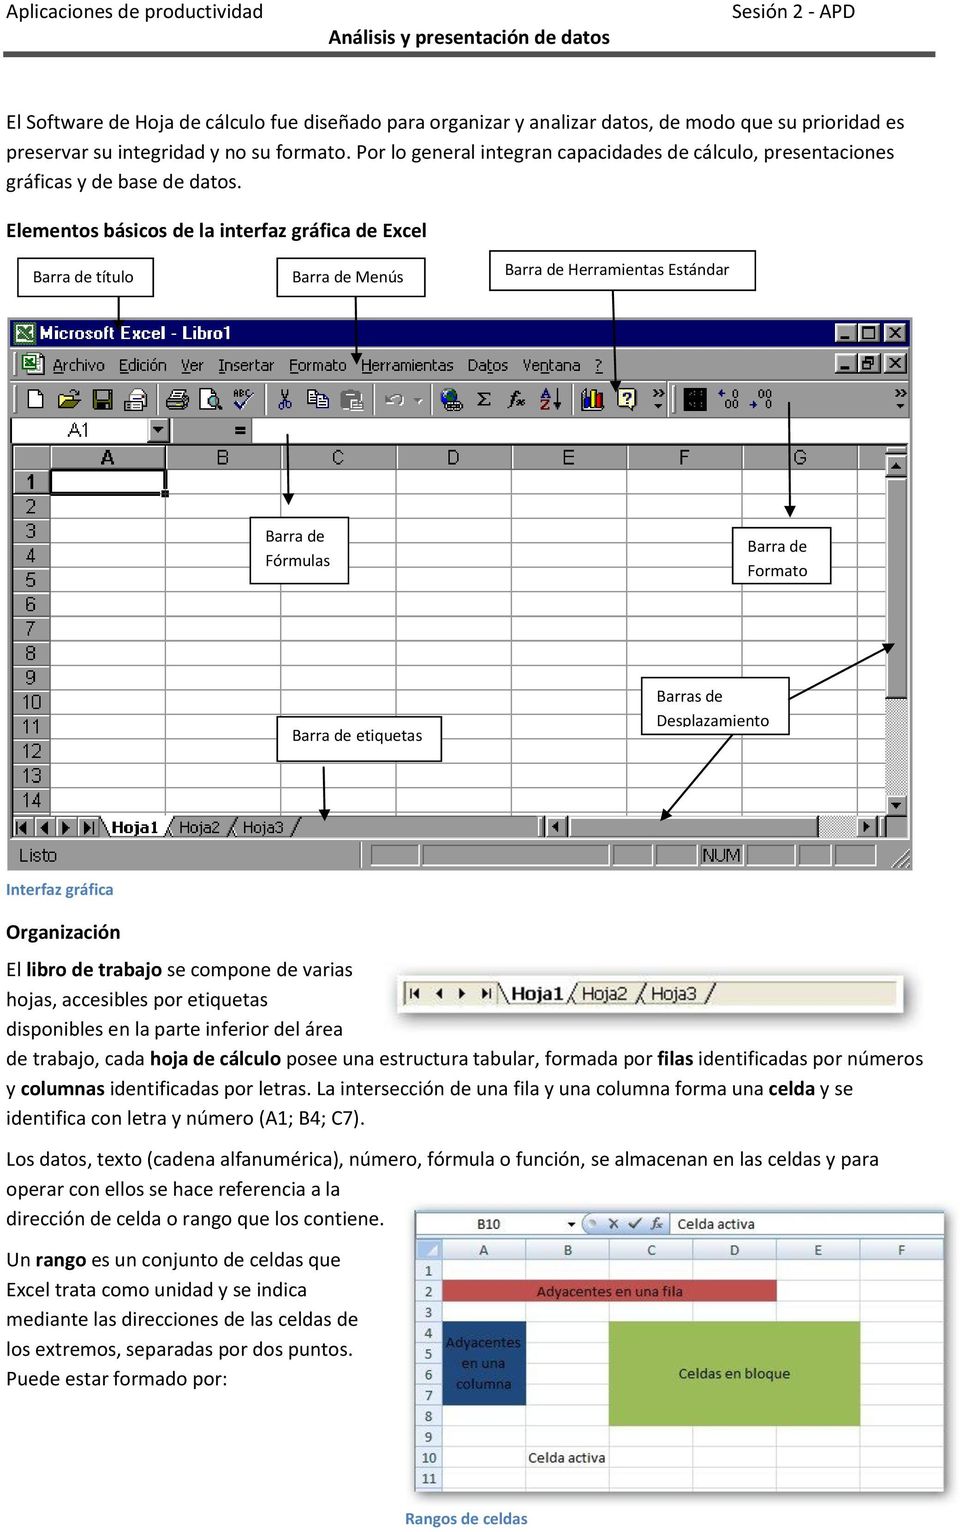 Elementos básicos de la interfaz gráfica de Excel Barra de título Barra de Menús Barra de Herramientas Estándar Barra de Fórmulas Barra de Formato Barra de etiquetas Barras de Desplazamiento Interfaz